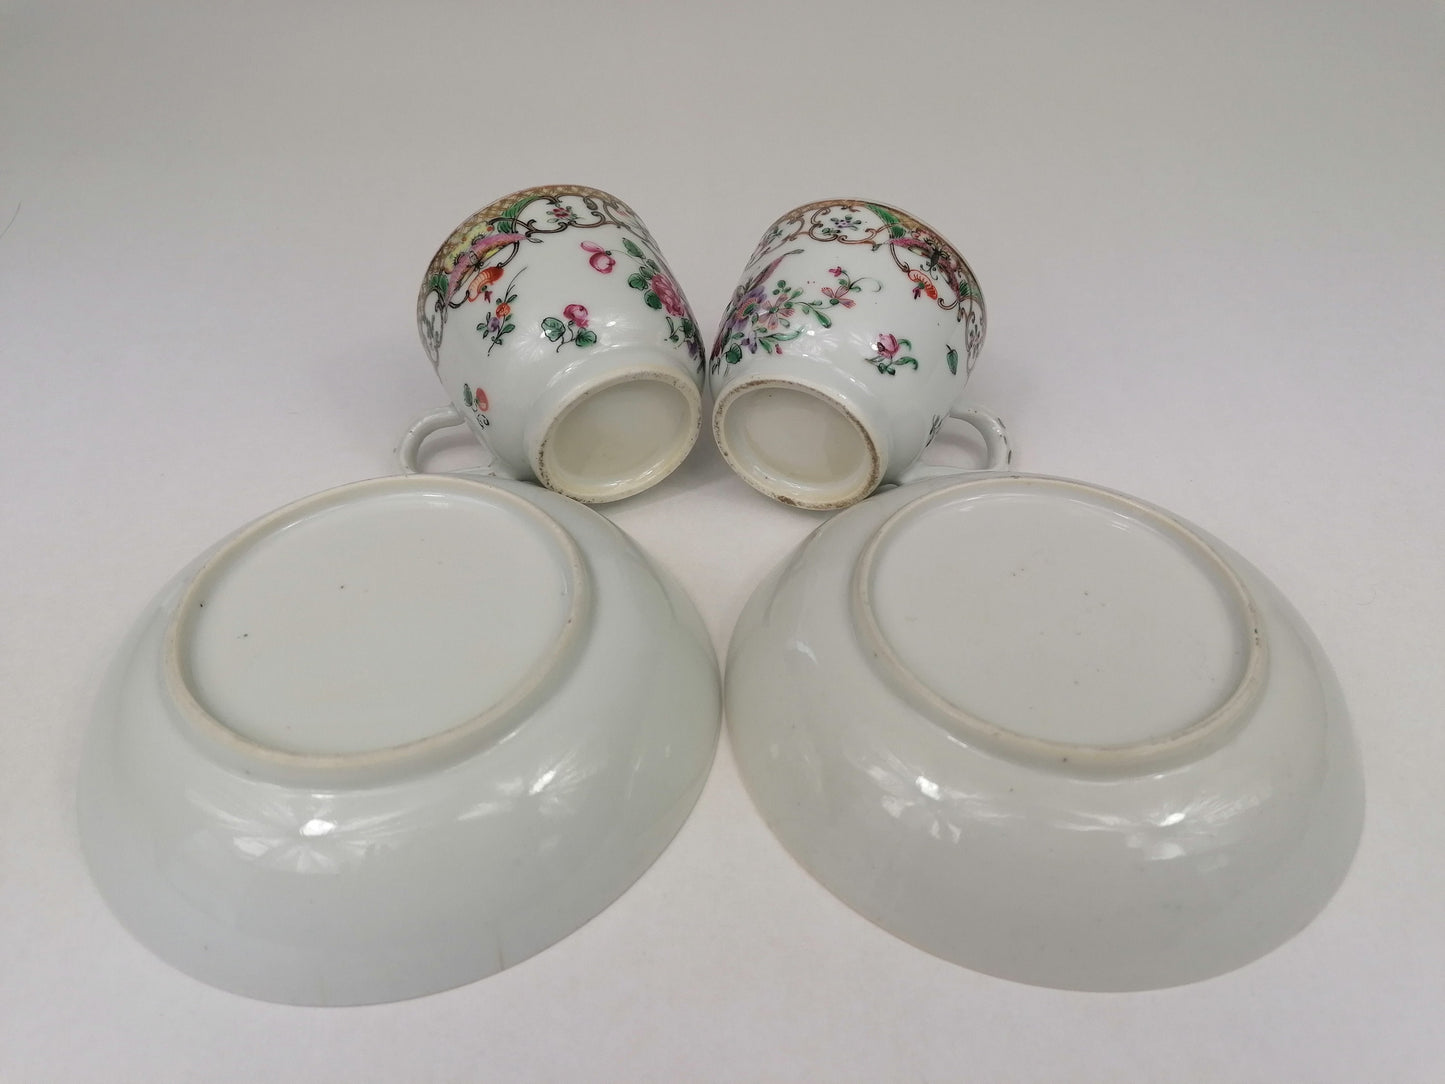 Bộ 2 tách trà và đĩa cổ Trung Quốc // thế kỷ 18 // triều đại nhà Thanh